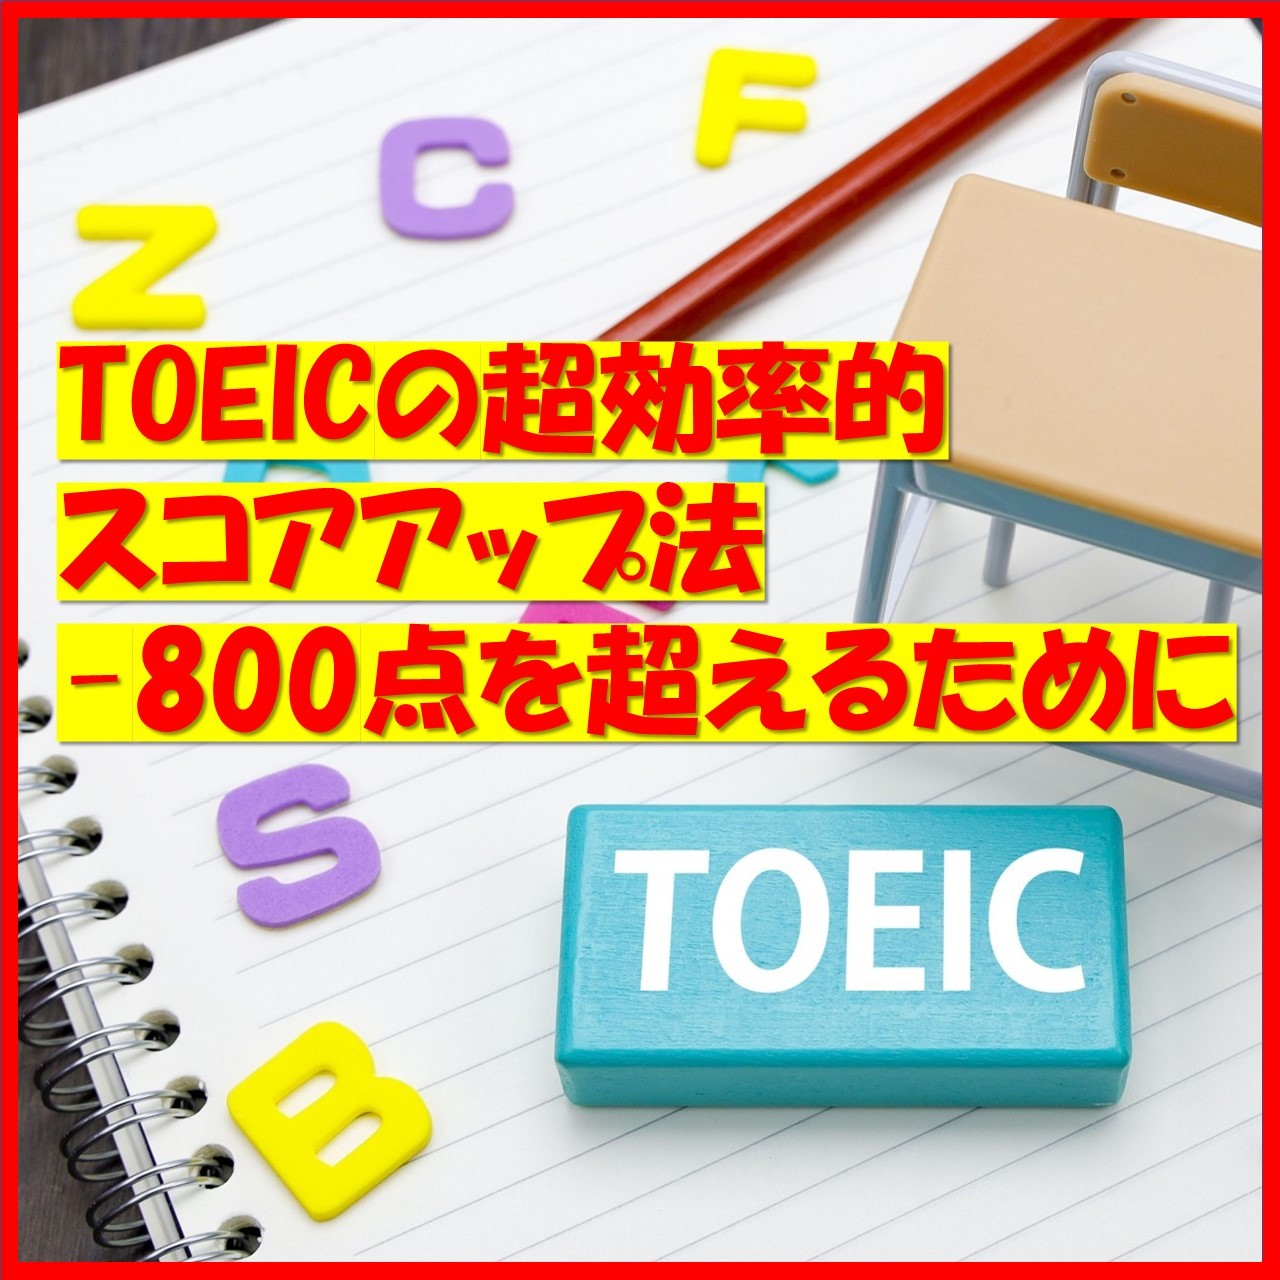 【英語4技能試験】TOEICの超効率的スコアアップ法-TOEIC800点を超えるために